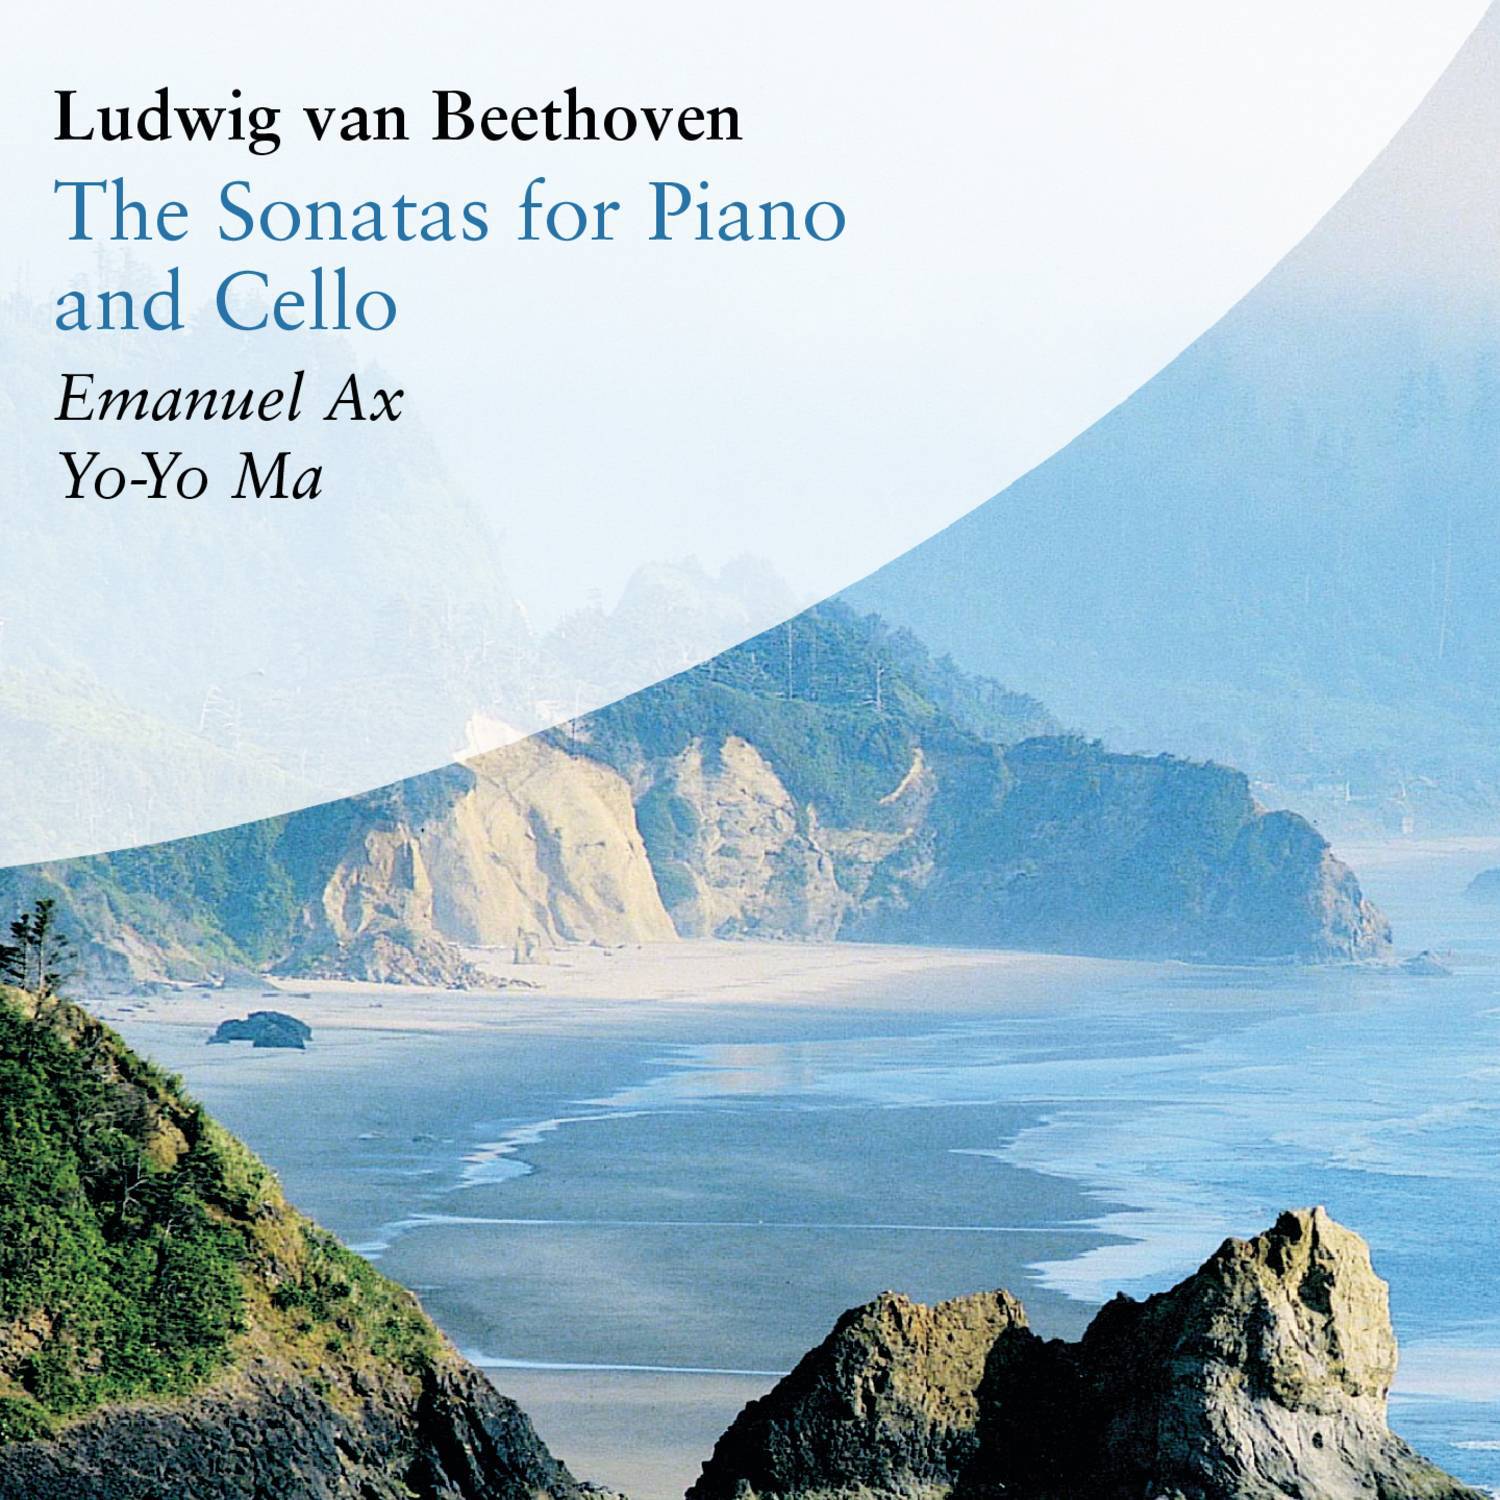 Cello Sonata No. 4 in C Major, Op. 102 No. 1:II. Adagio - Allegro vivace